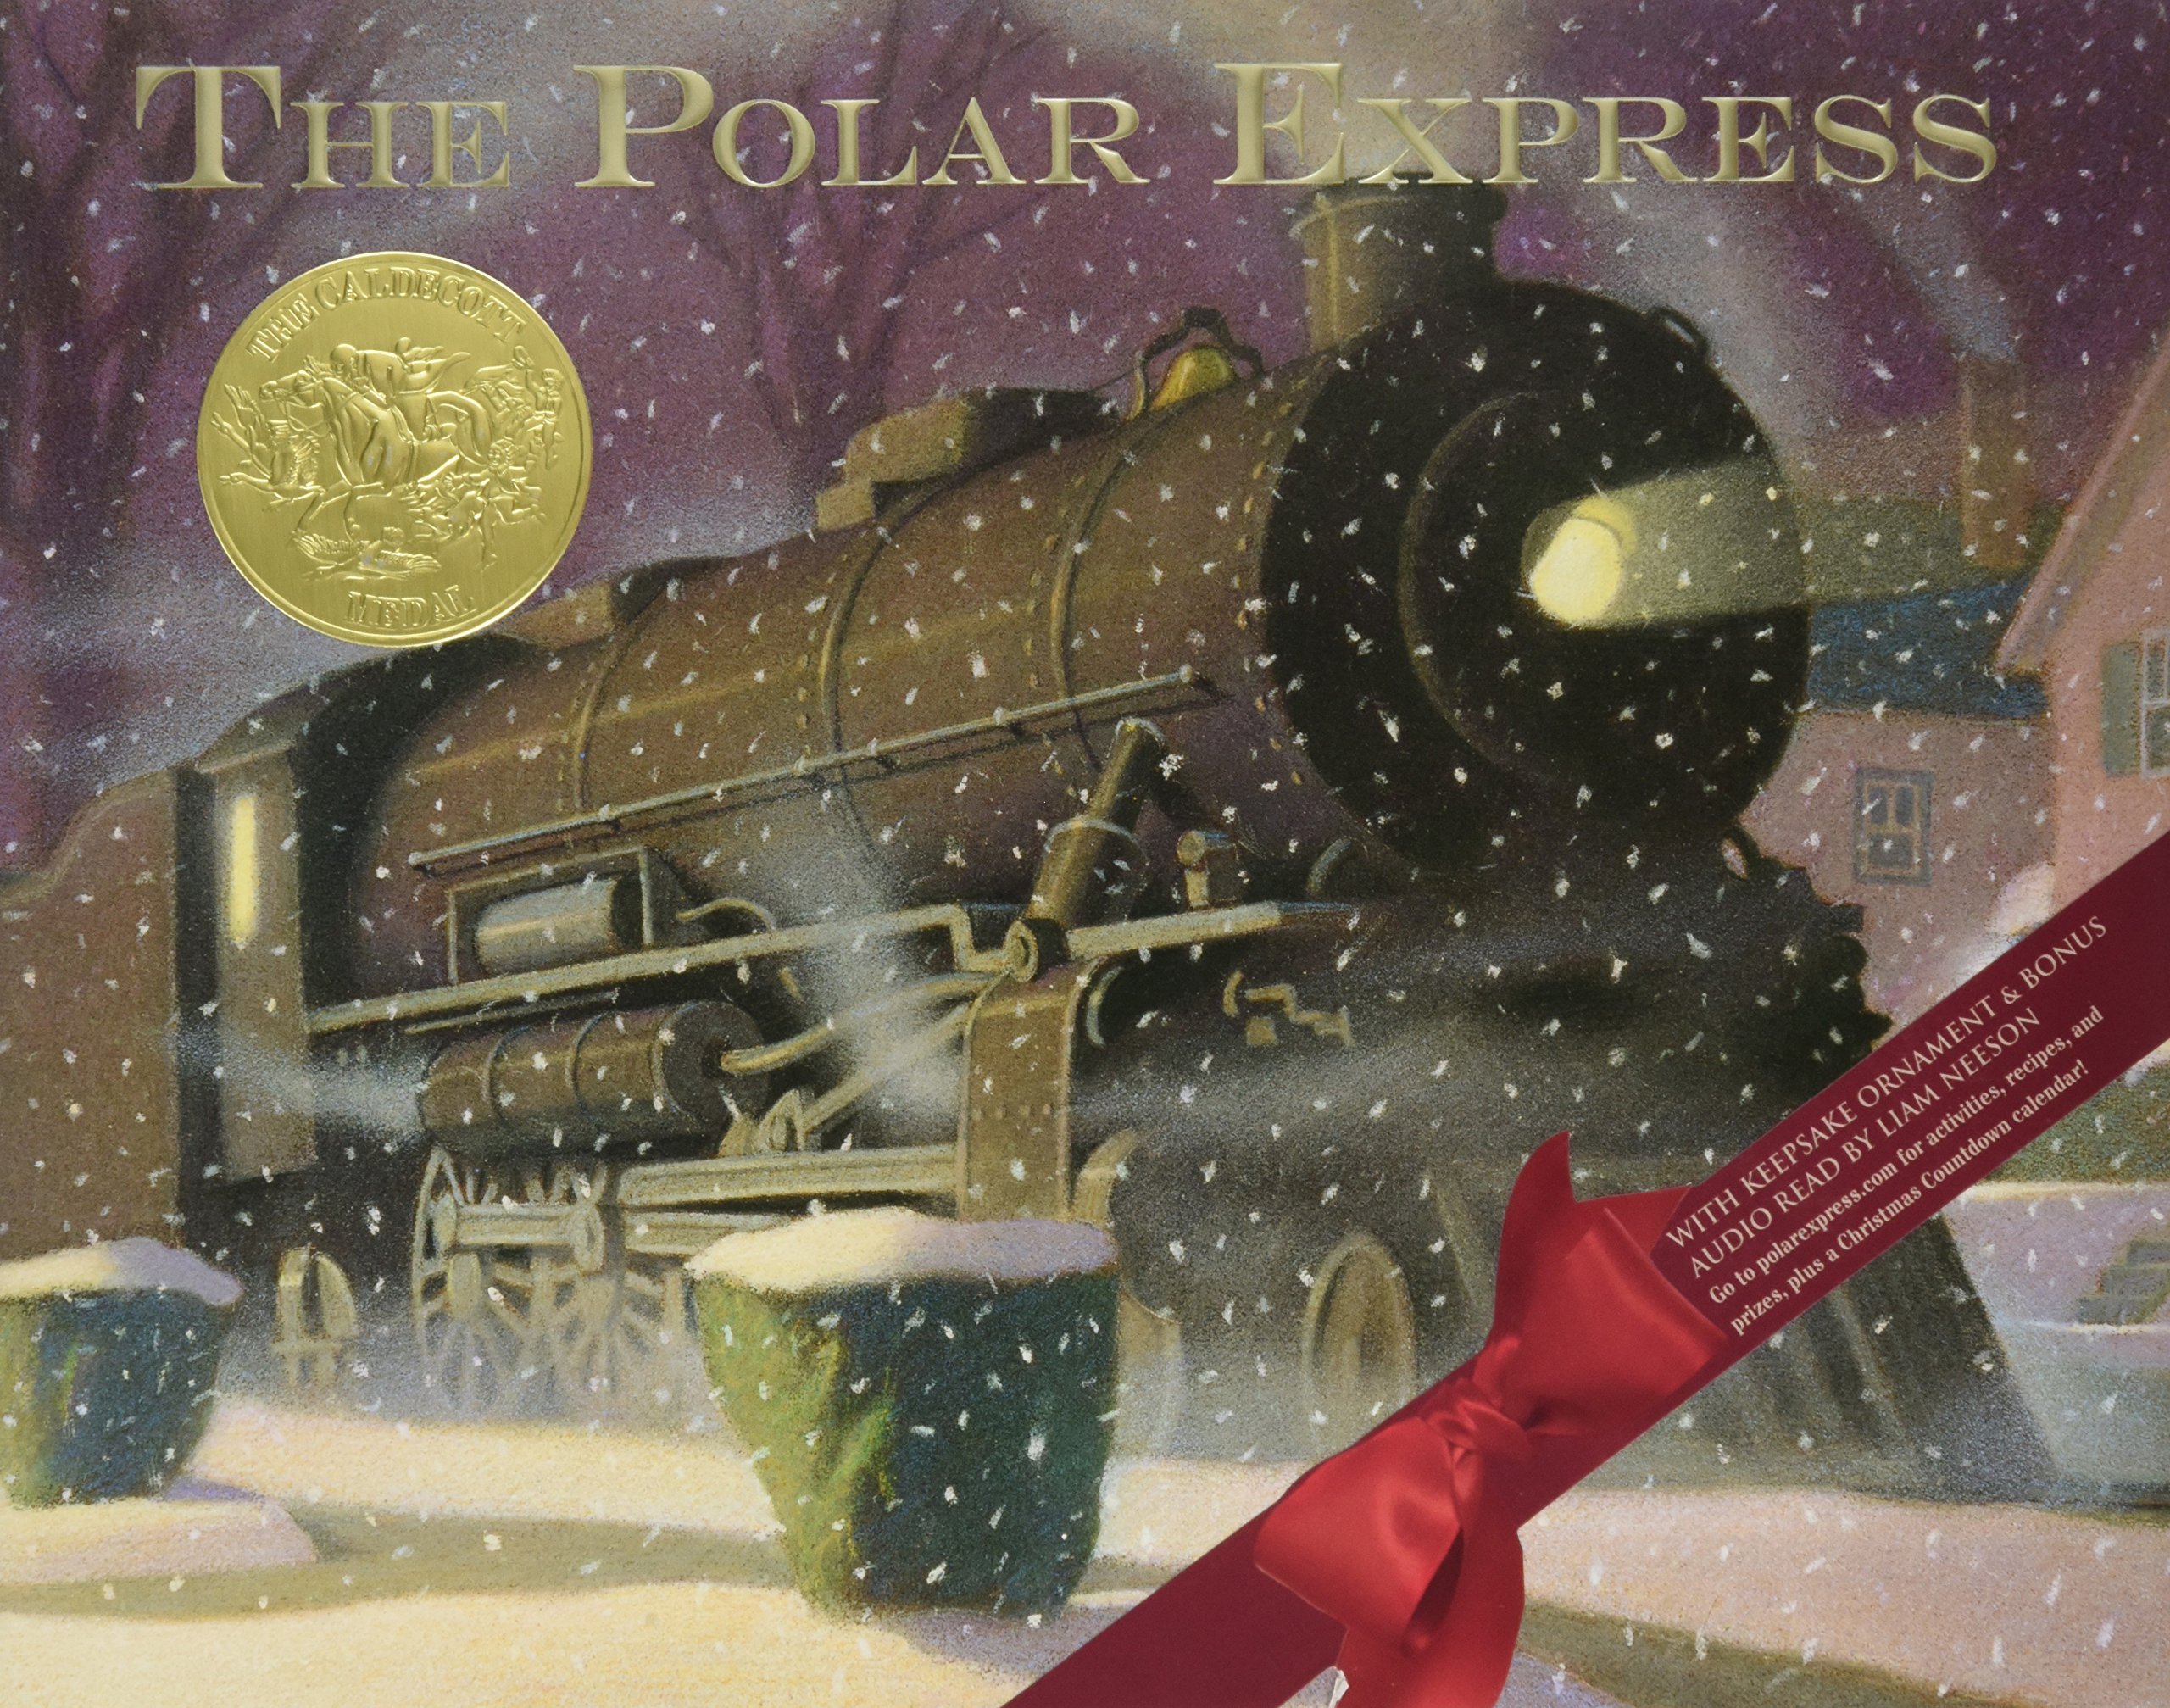 Polar Express book cover